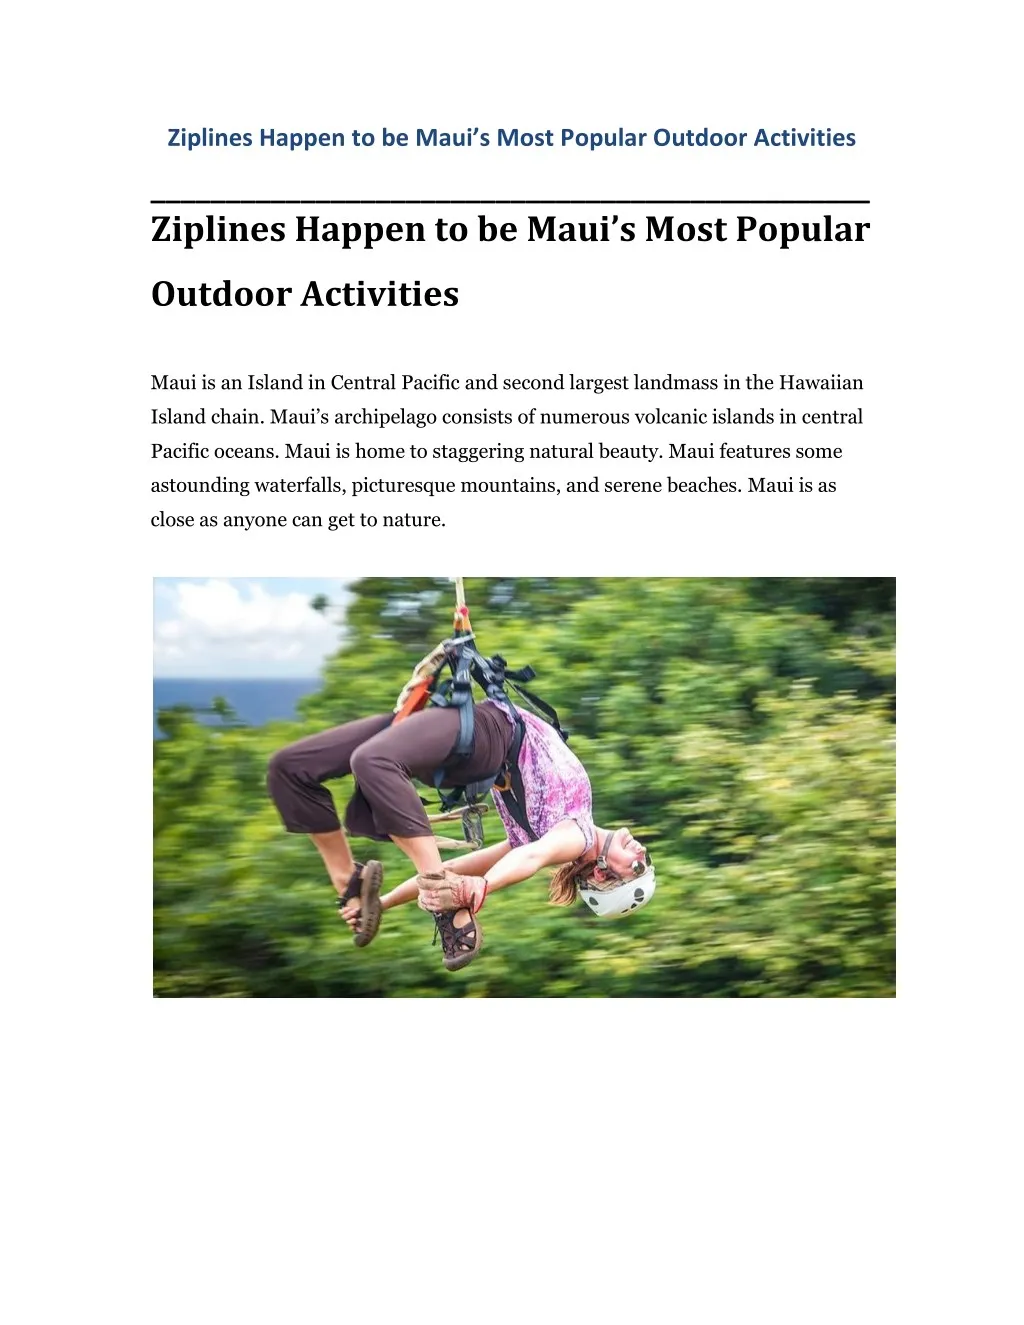 ziplines happen to be maui s most p opular